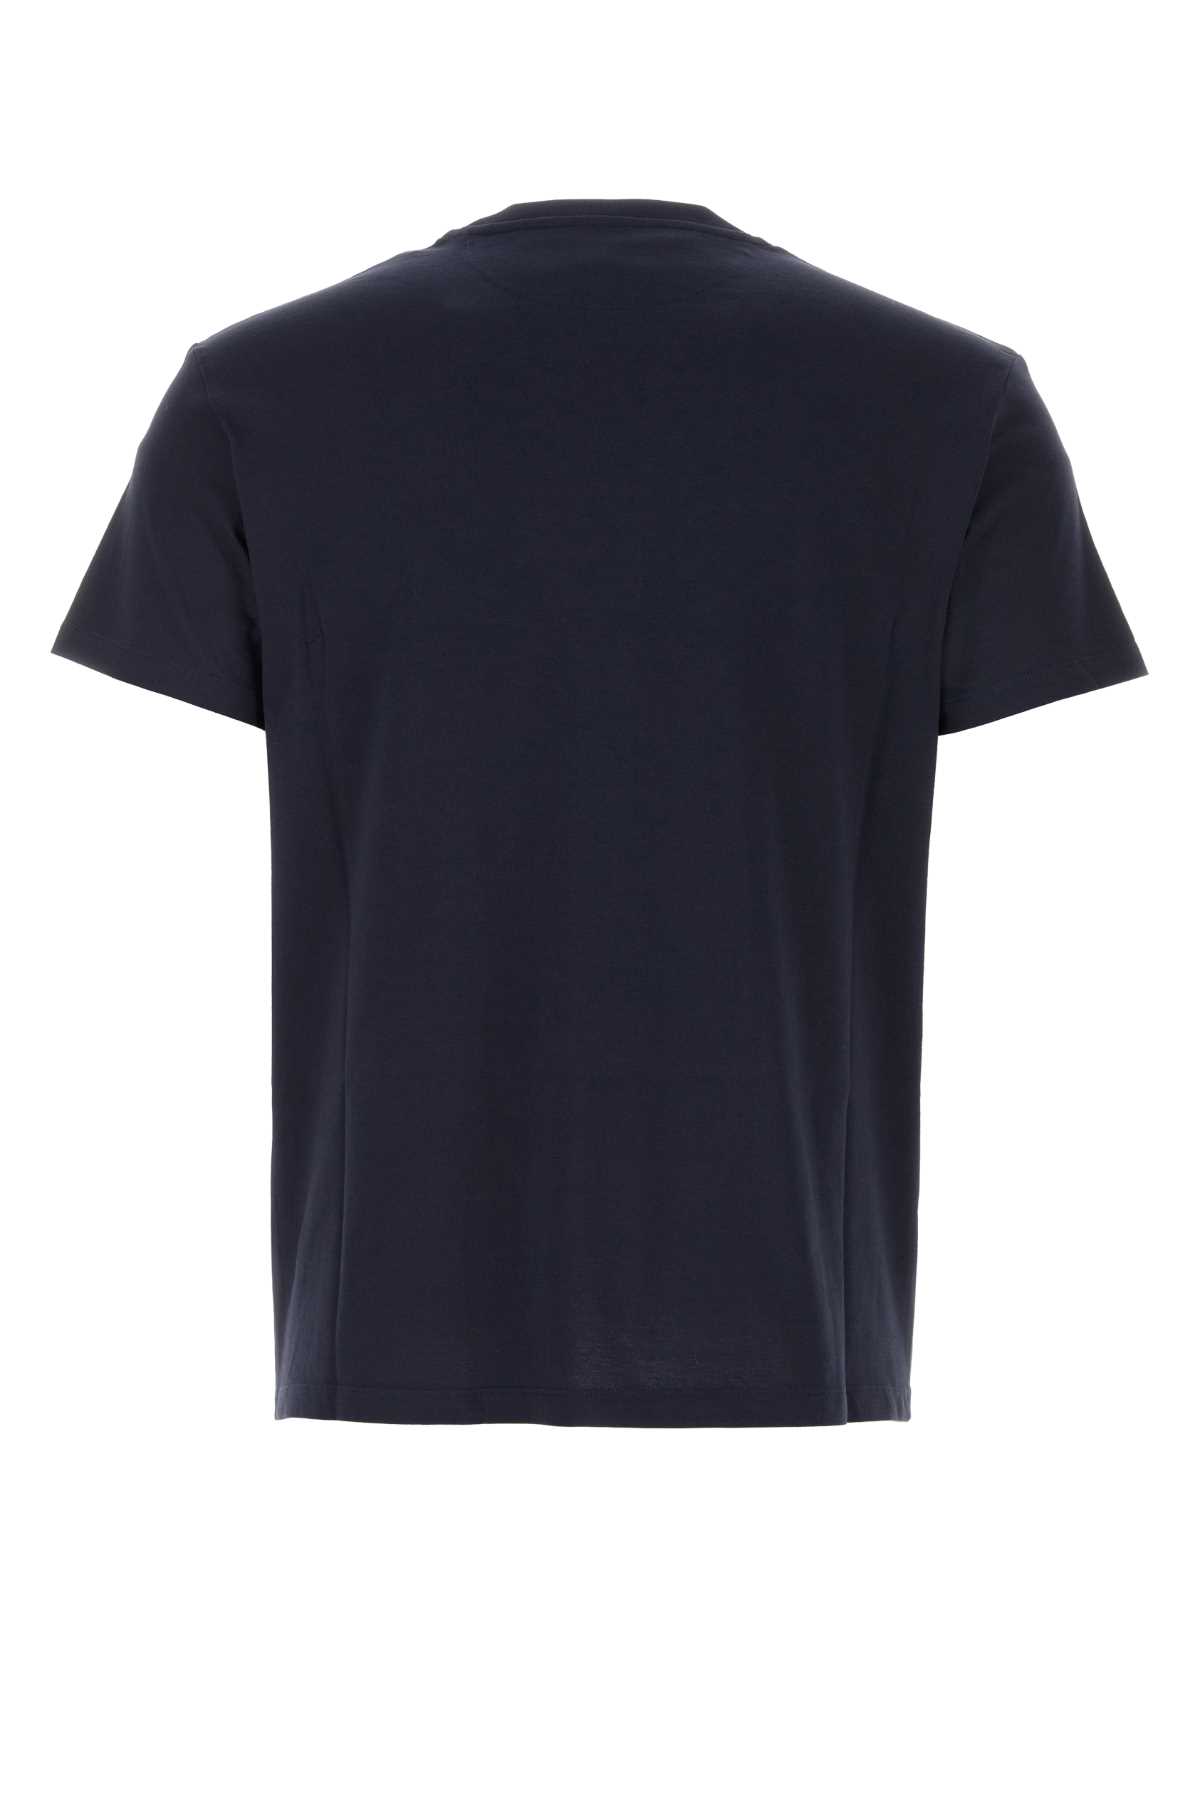 Valentino Midnight Blue Cotton T-shirt In Navy